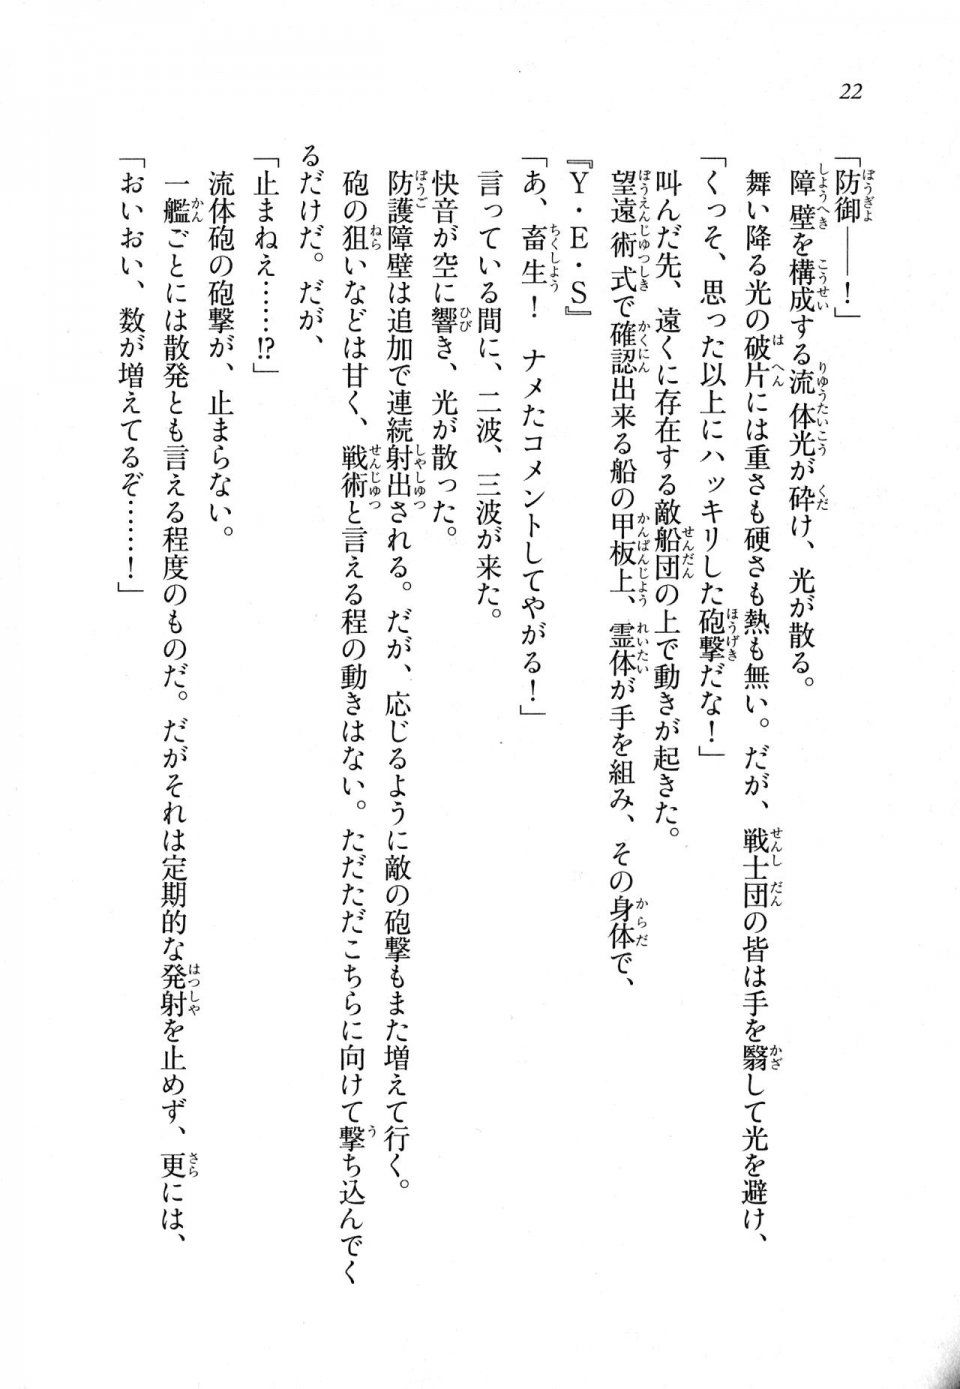 Kyoukai Senjou no Horizon LN Sidestory Vol 1 - Photo #21